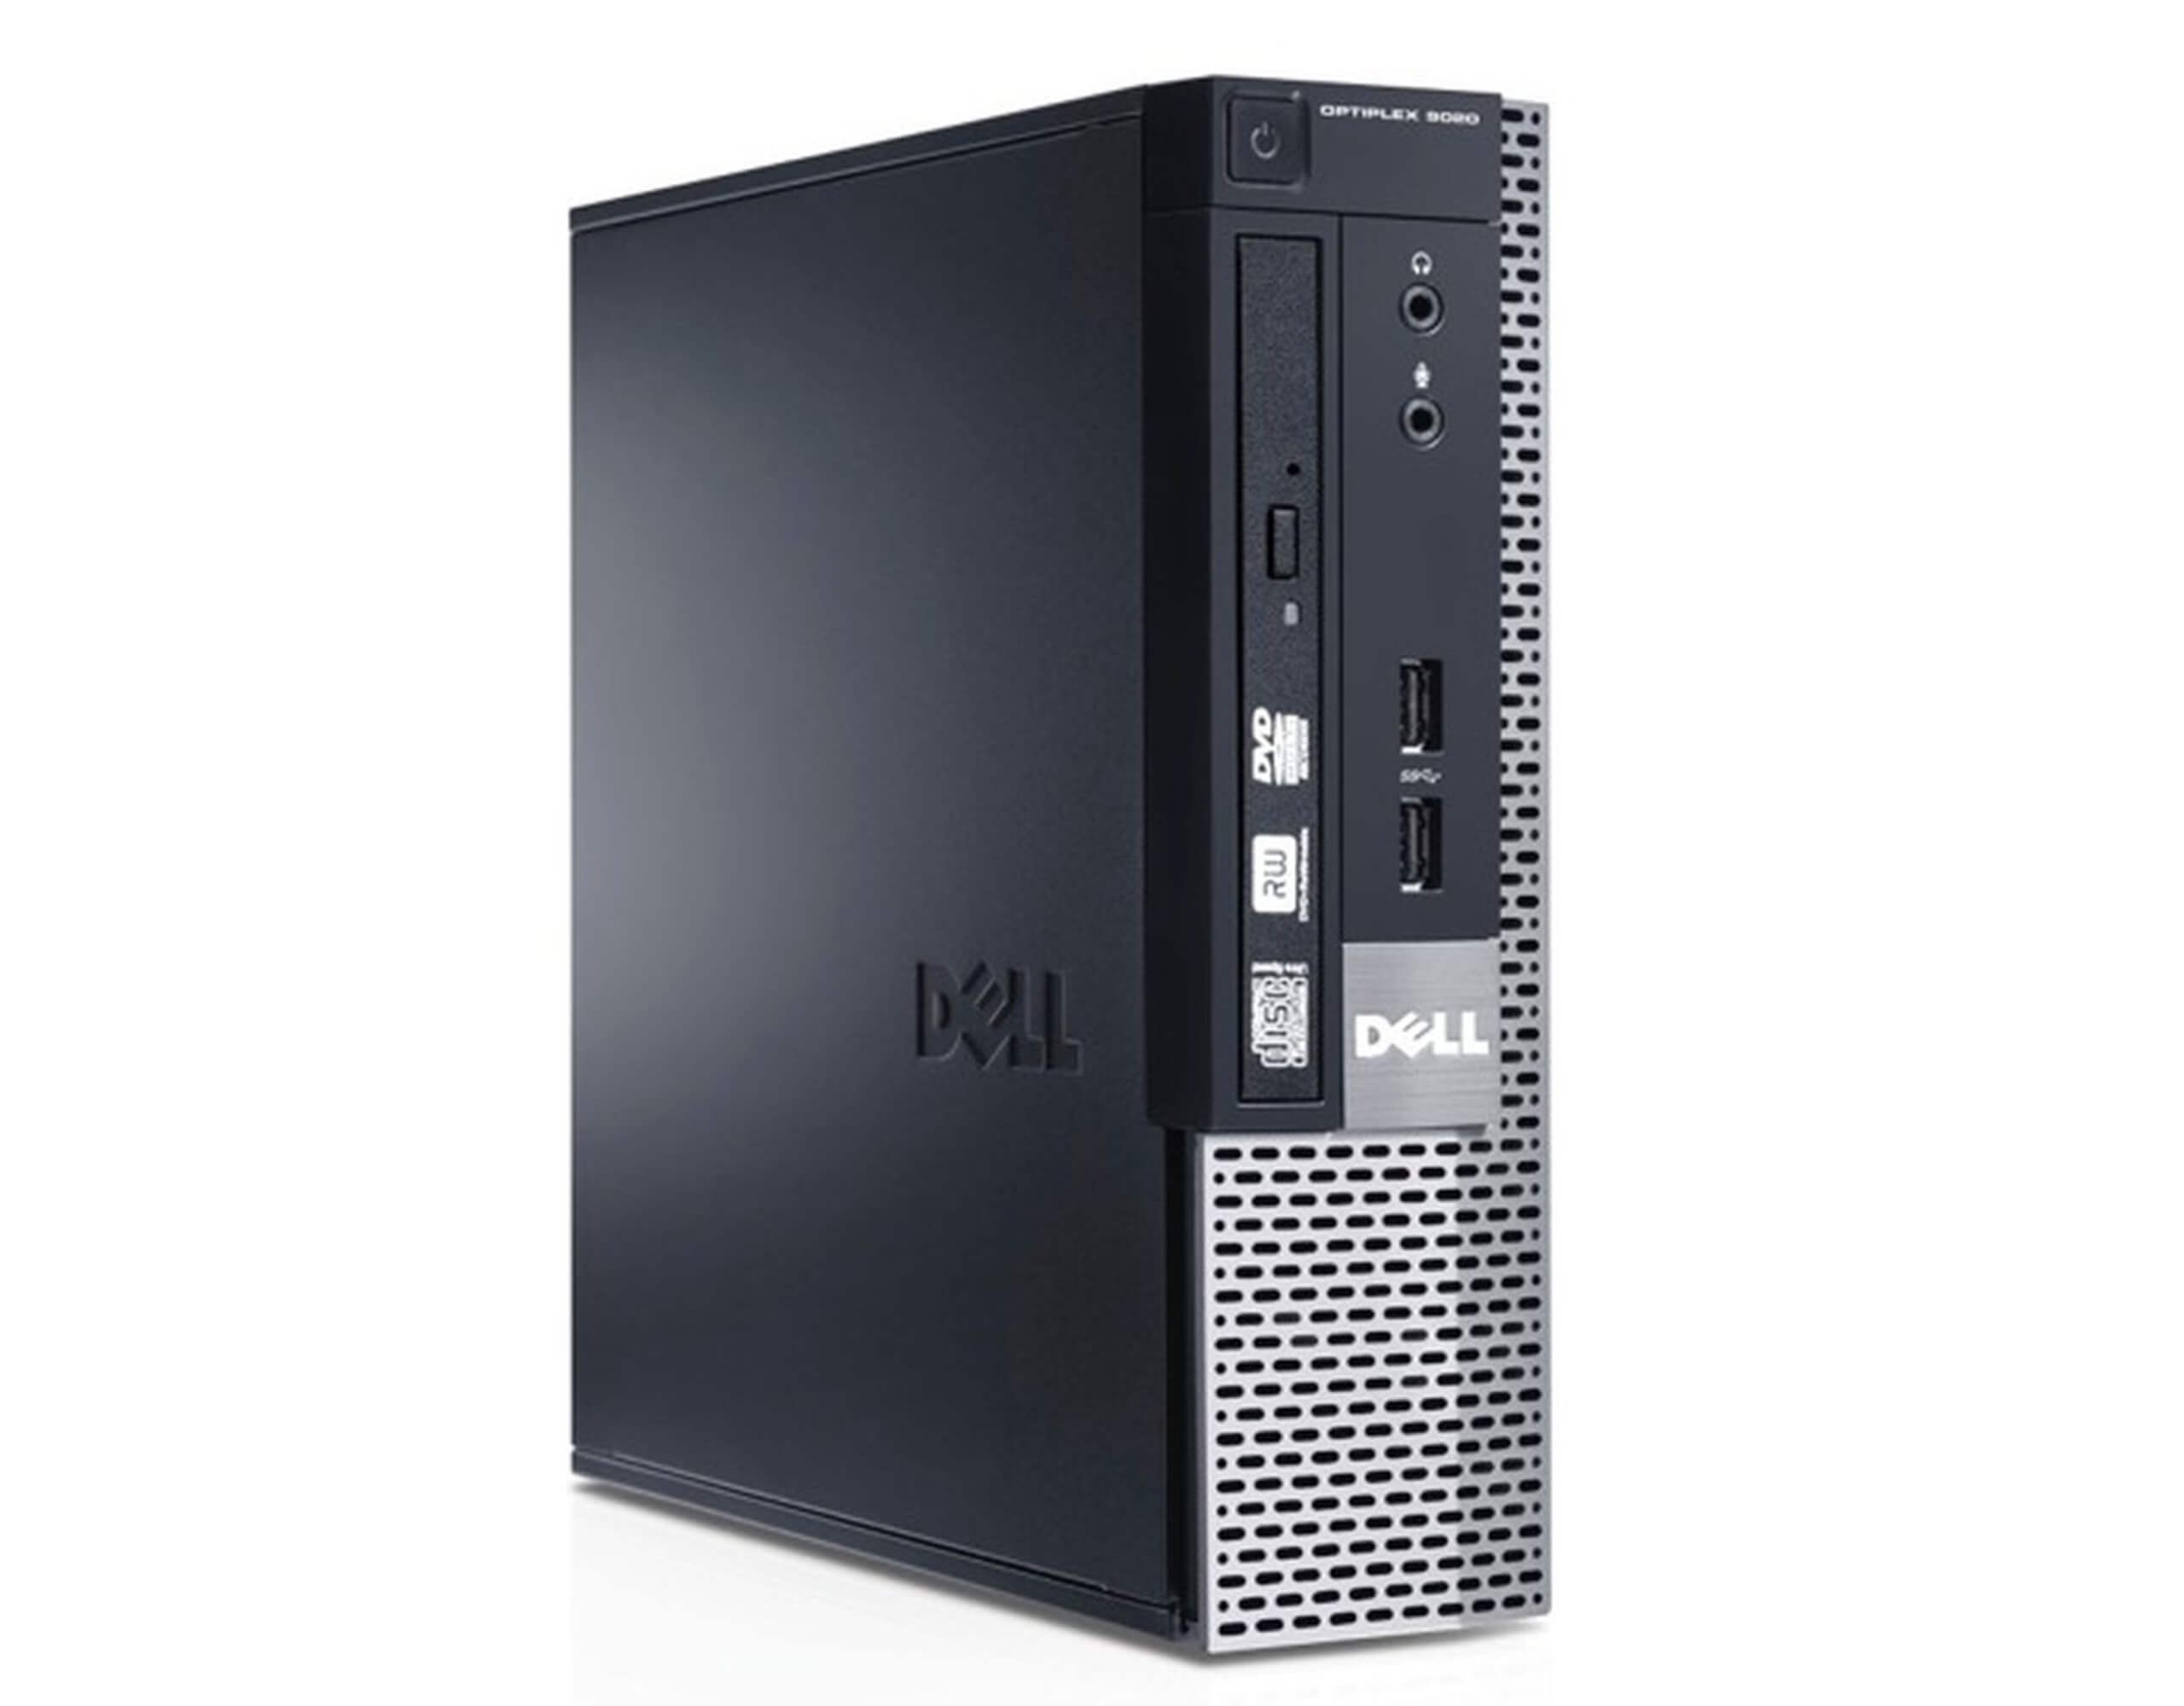 DELL 9020 USFF I5-4590S 3.0 / 8192 MB DDR3 / 500 GB / DVD / WINDOWS 10 PRO